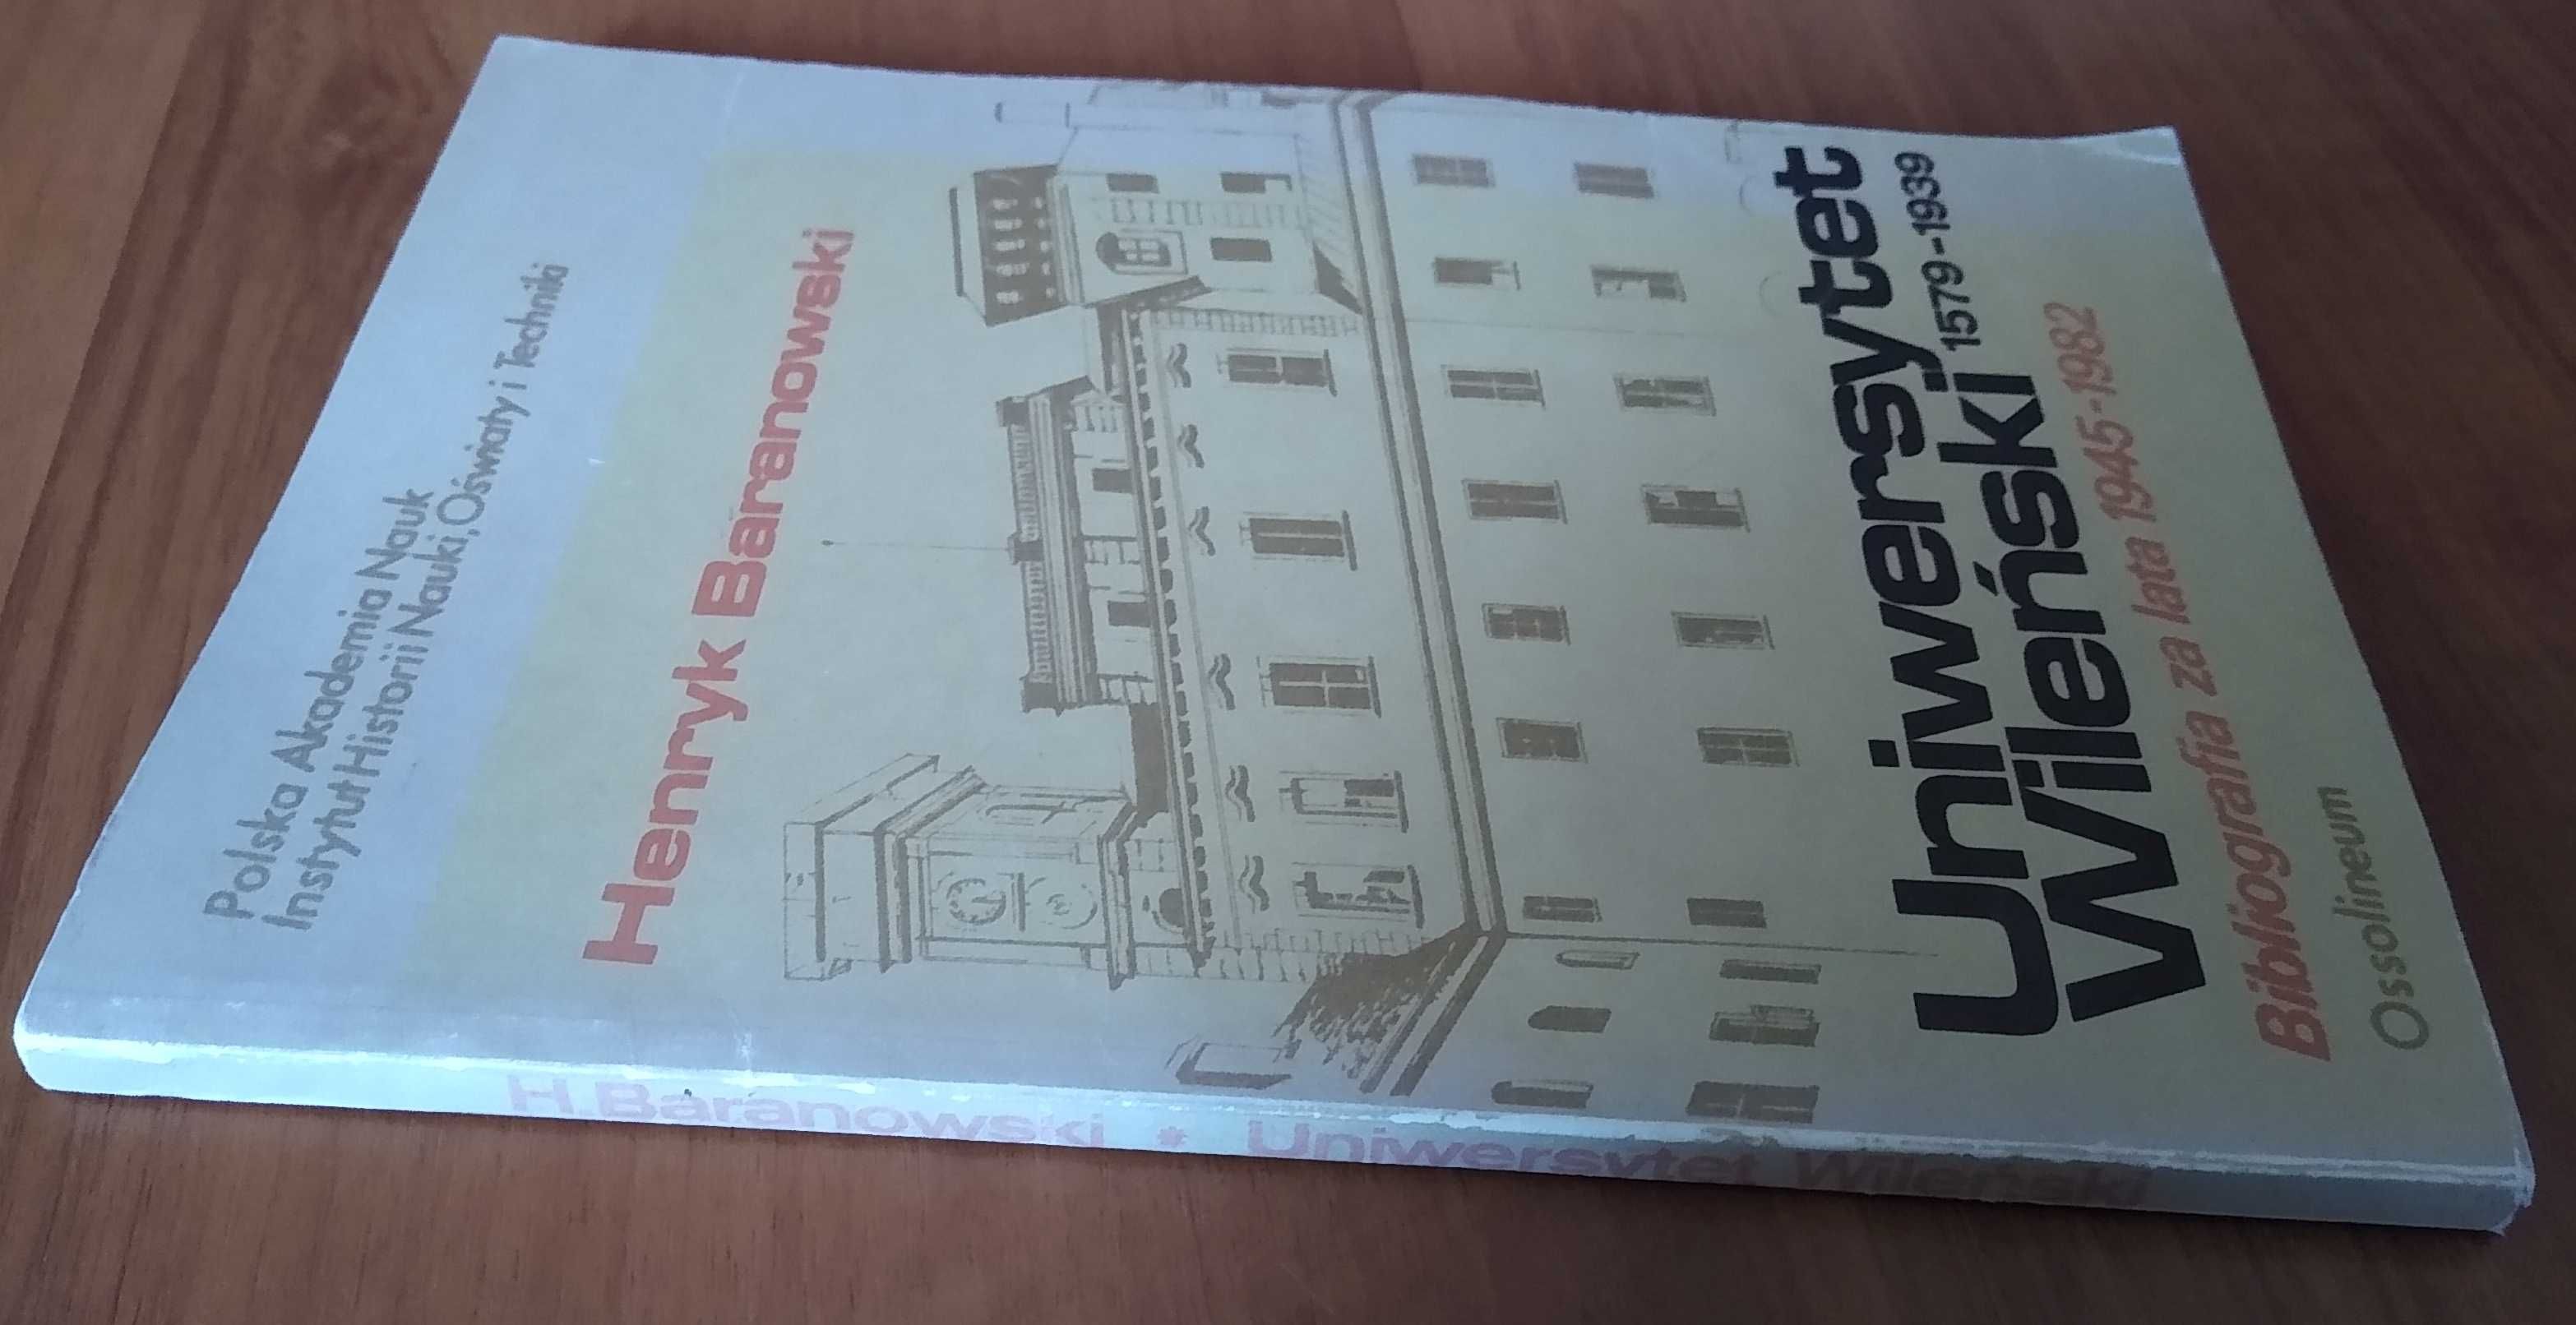 Uniwersytet Wileński 1579-:1939 bibliografia za lata 1945-:1982